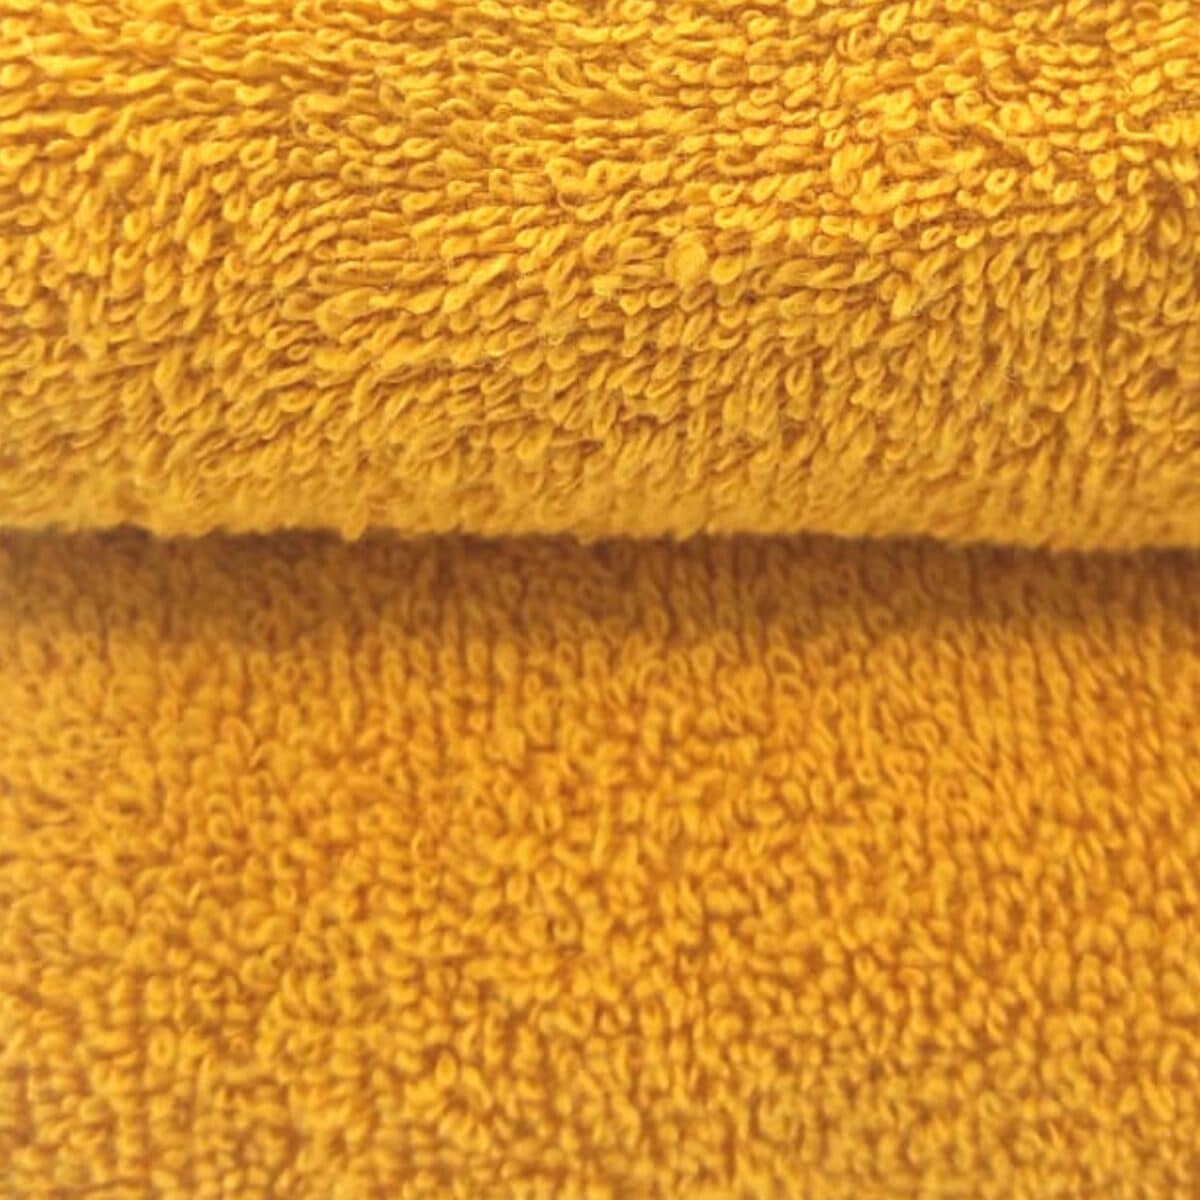 draft-ocra-giallo-senape-set-spugna-bagno-asciugamano-viso-bidet-puro-cotone-jacquard-marmorizzato-turchia-dettaglio